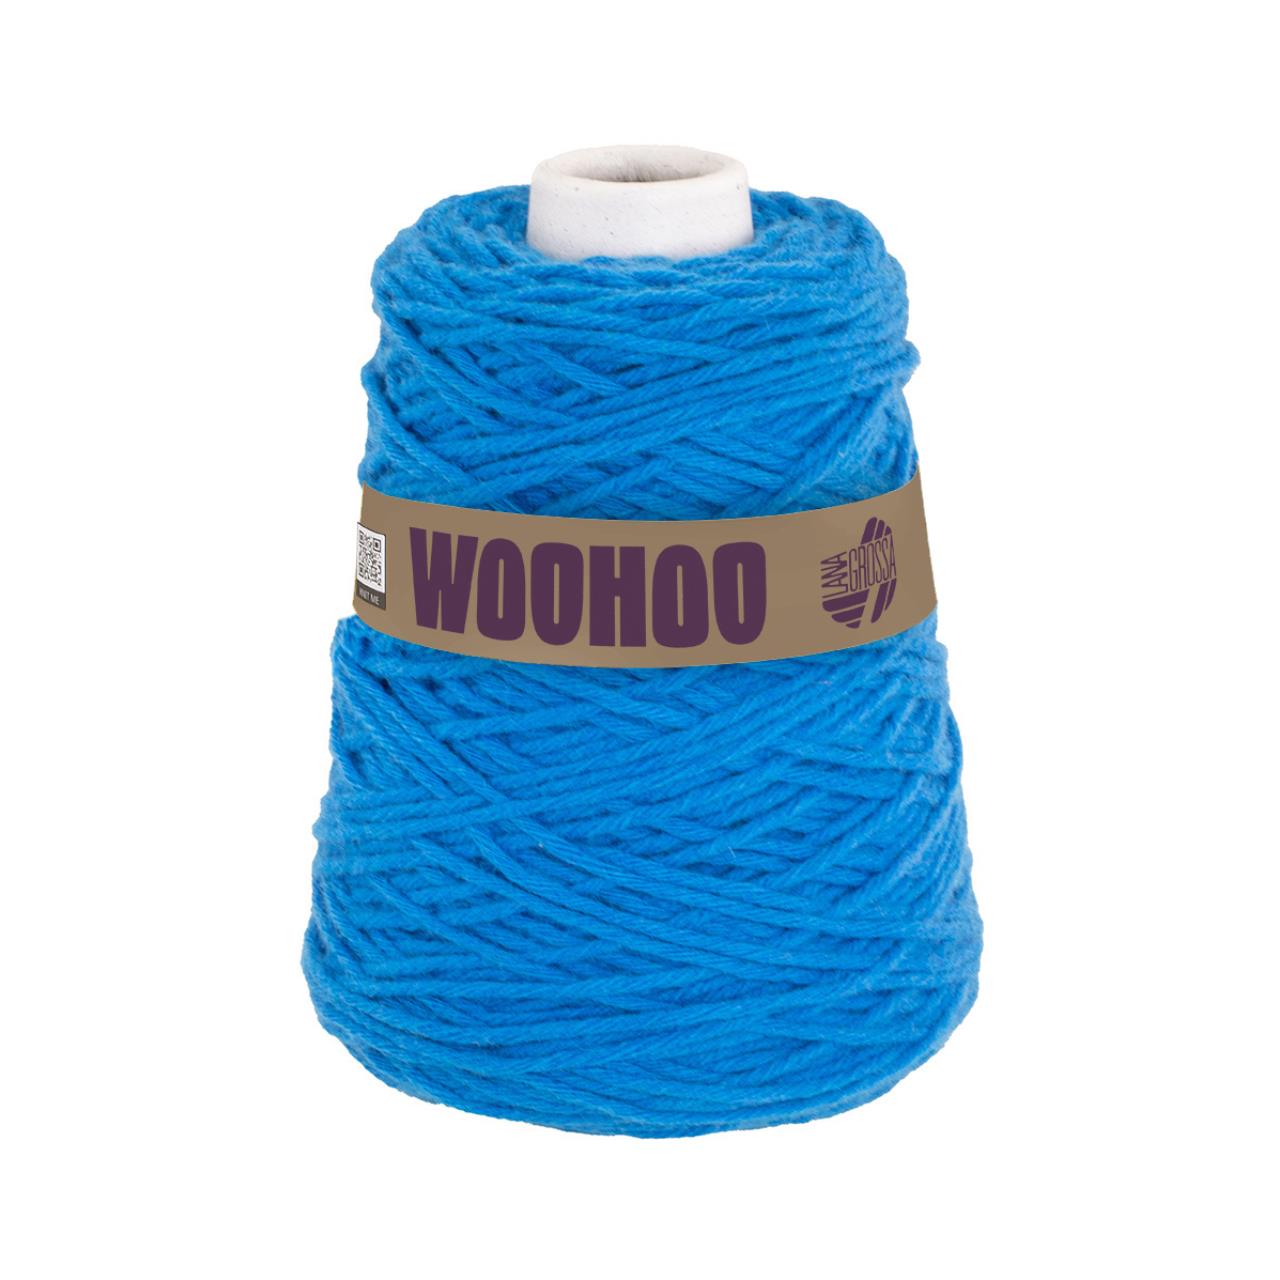 Woohoo (200g Kone) 7 Blau